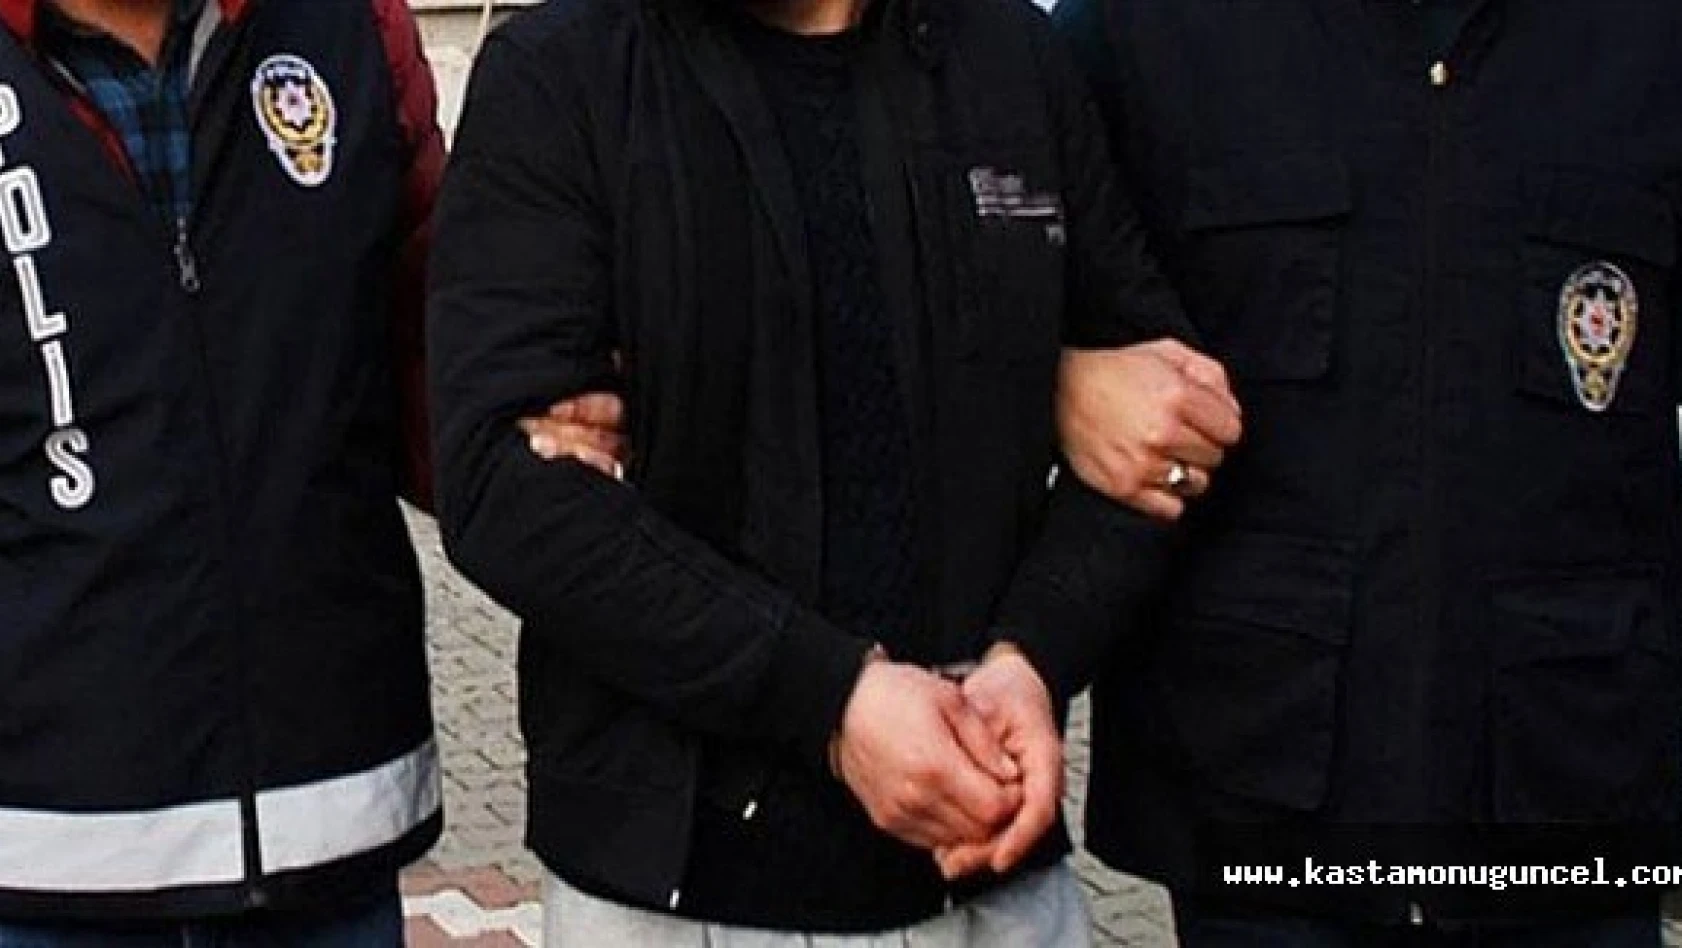 Kastamonu'da 'ByLock' kullanan öğretmen tutuklandı